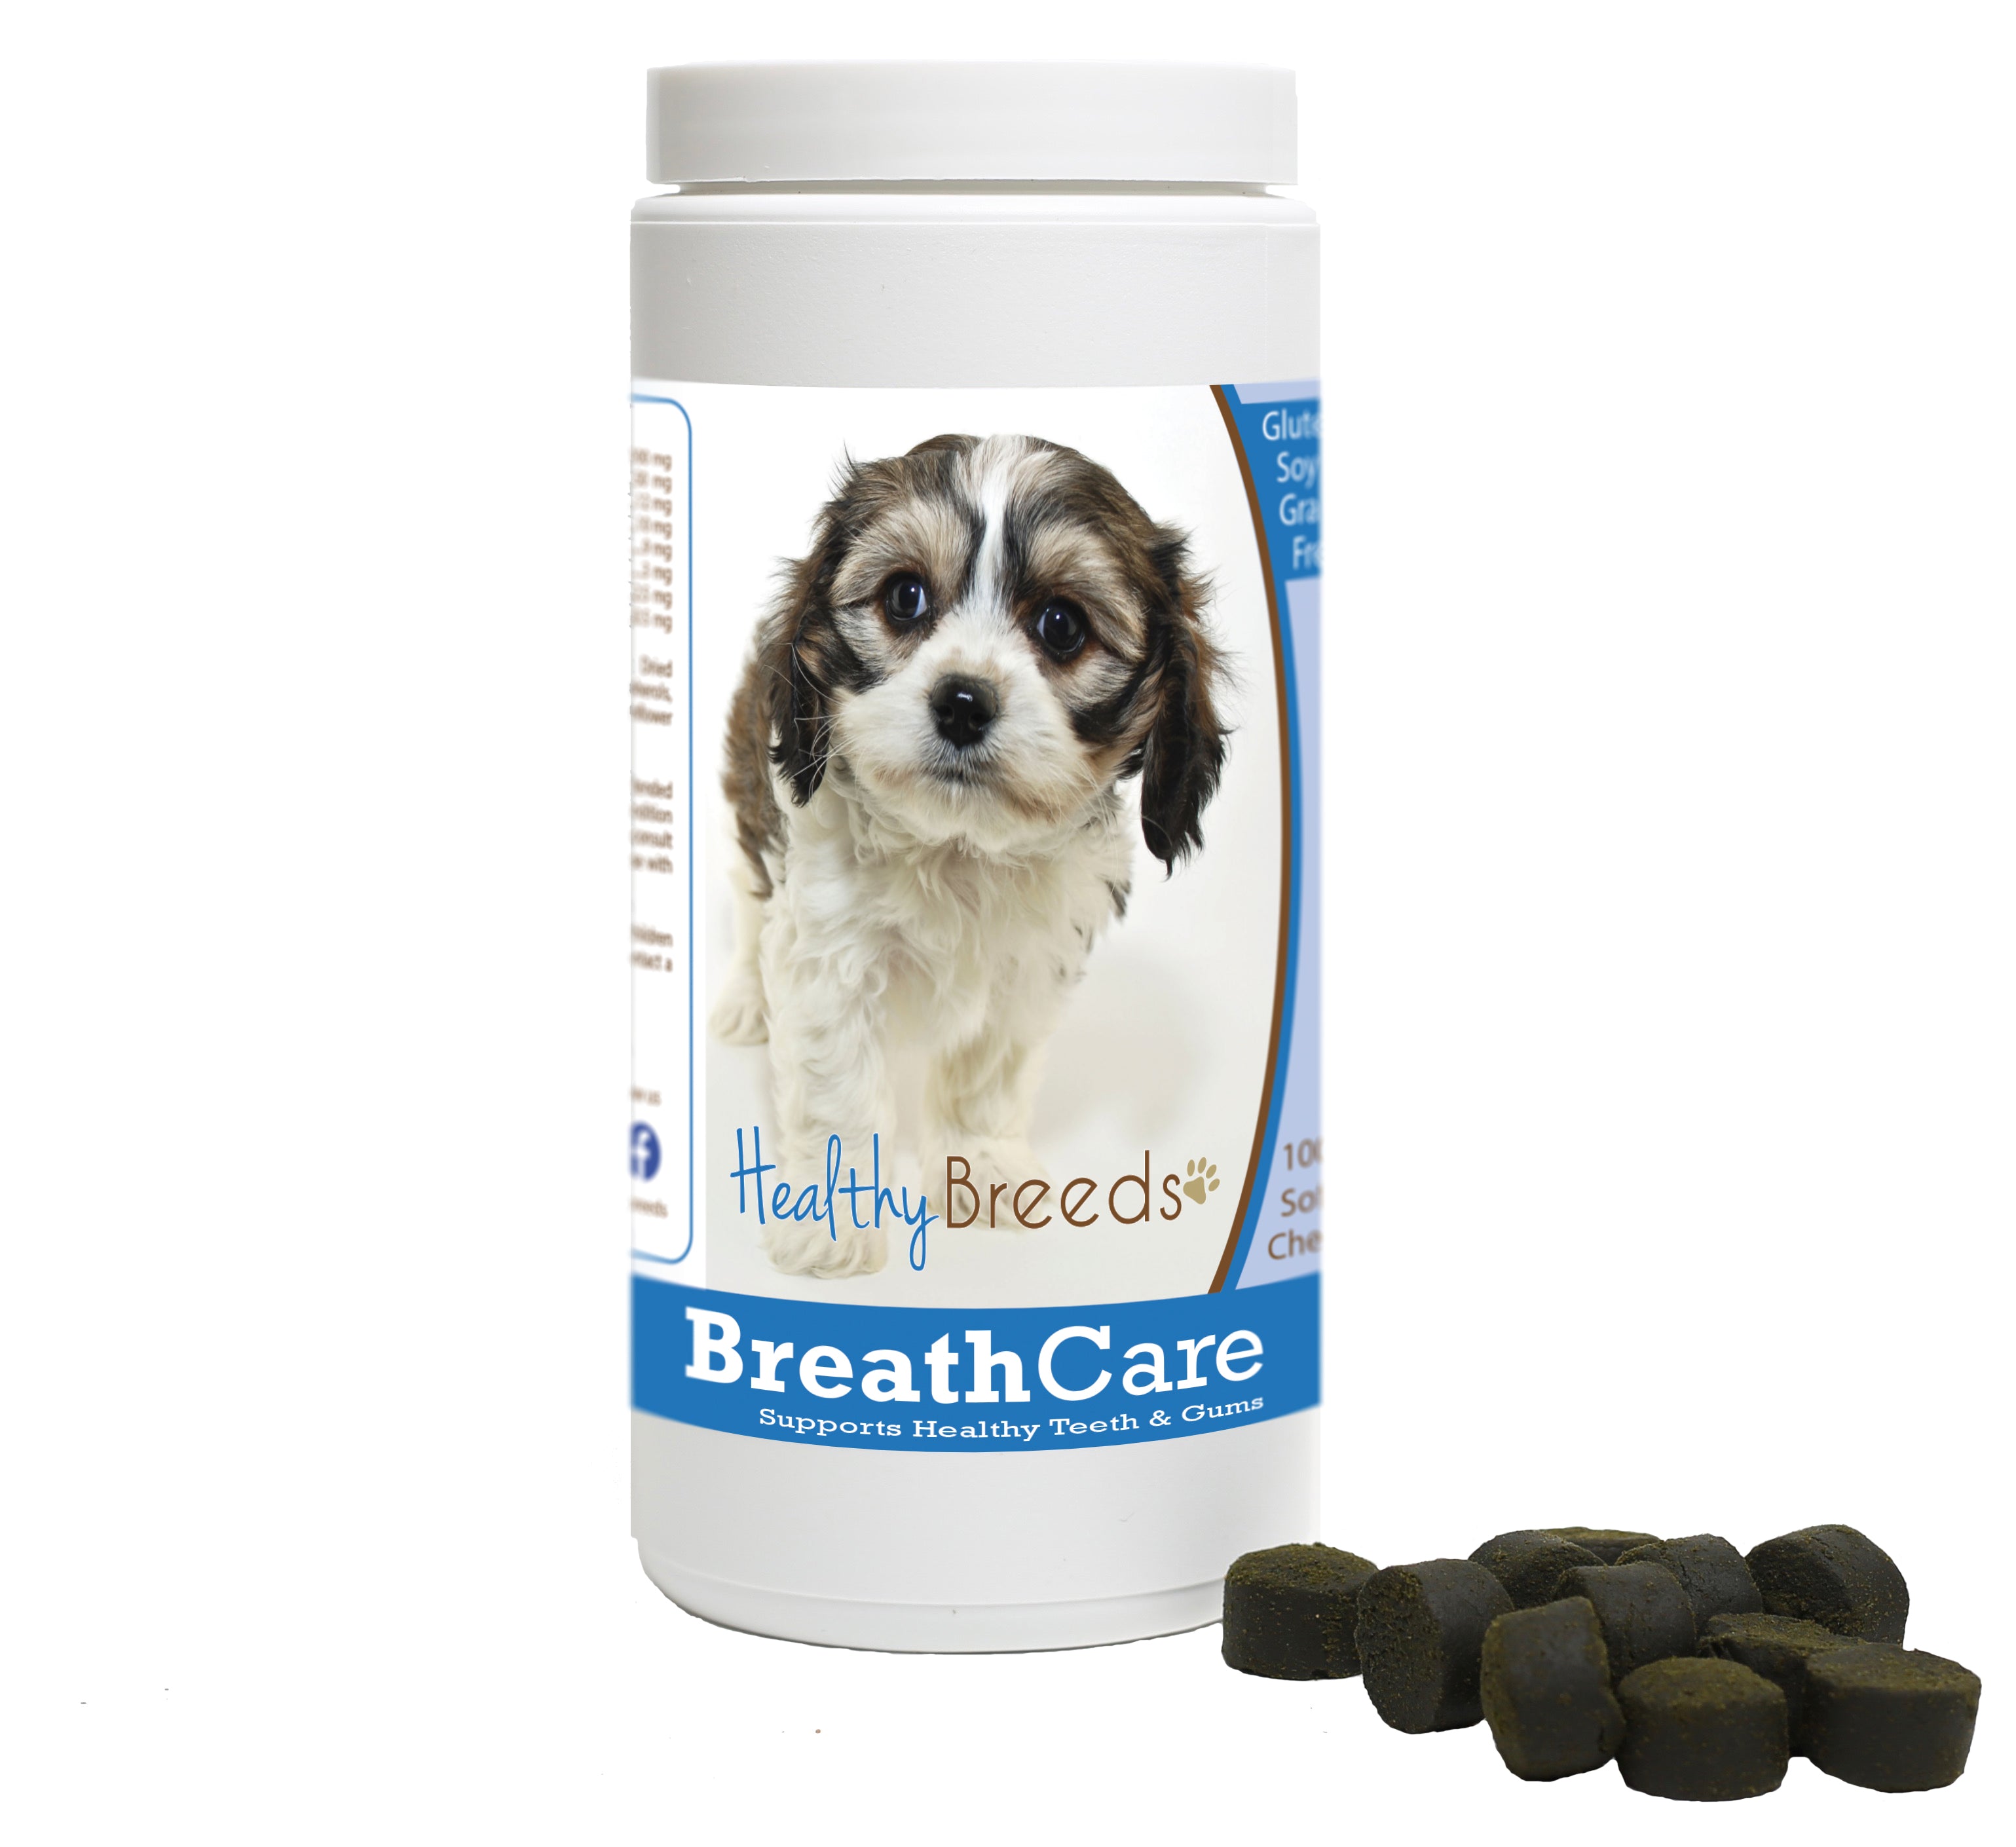 Cavachon Breath Care Soft Chews for Dogs 100 Count